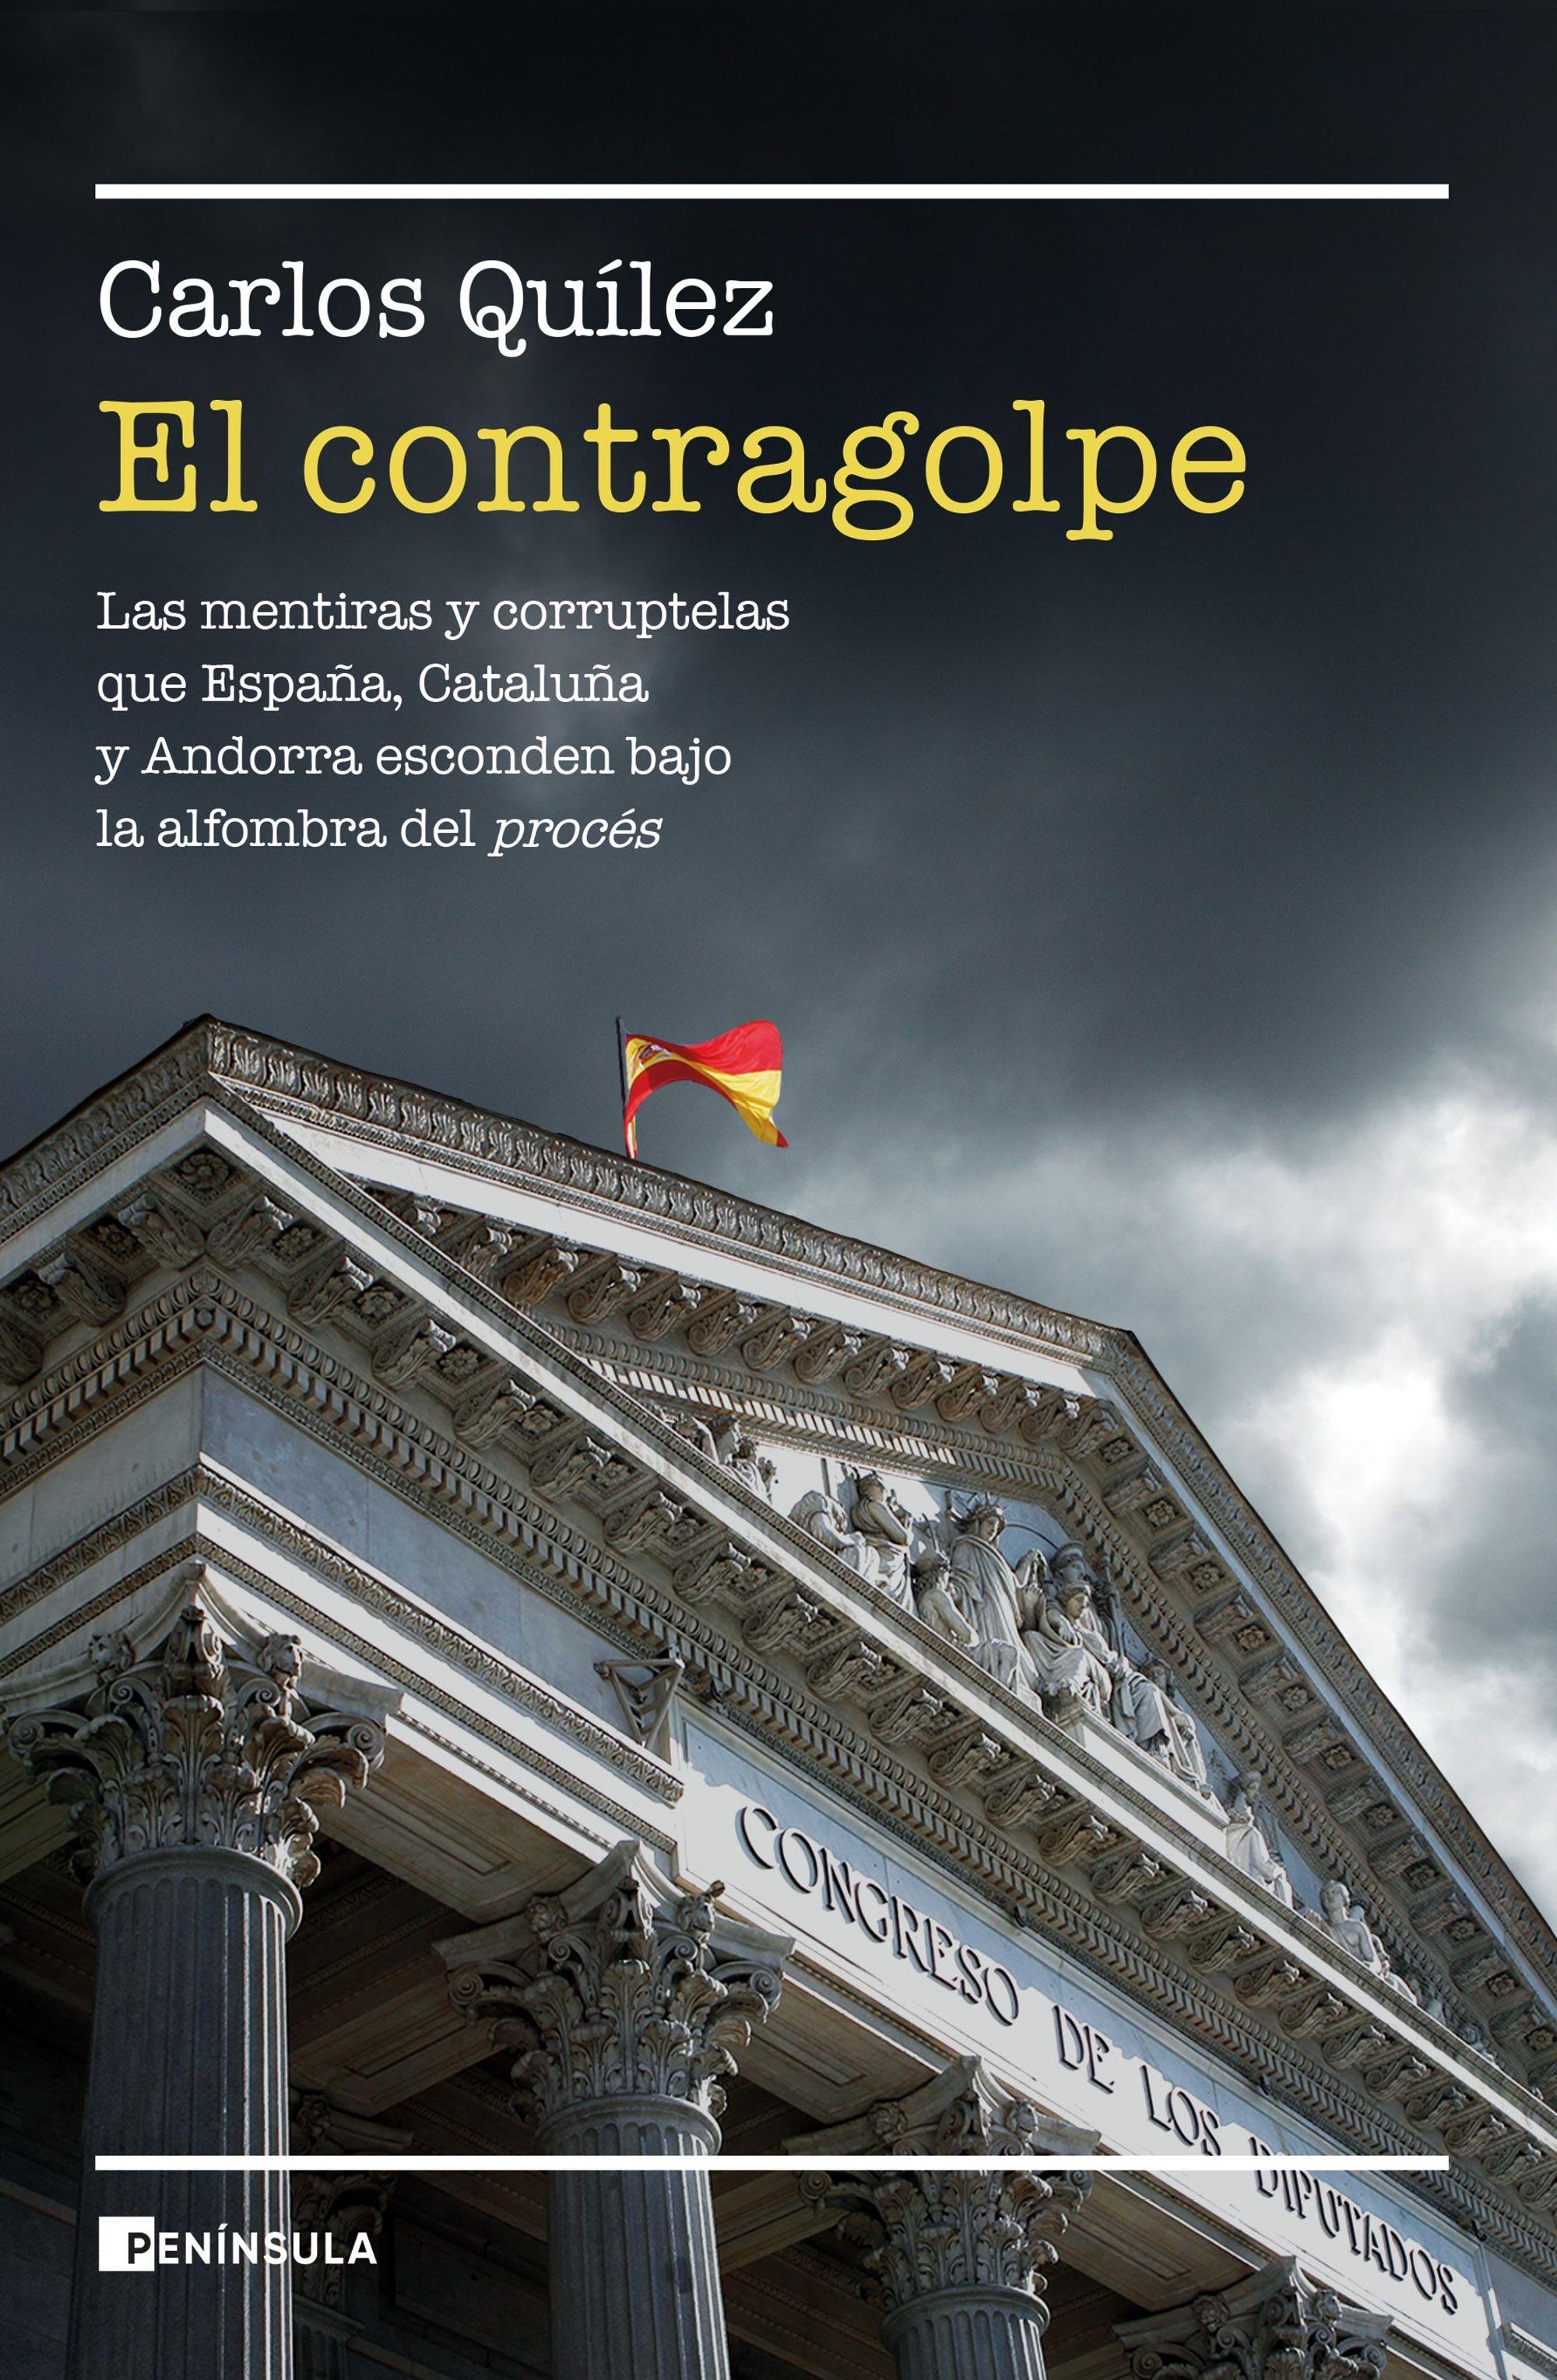 Contragolpe, El "Las mentiras y corruptelas que Cataluña, España y Andorra esconden bajo"